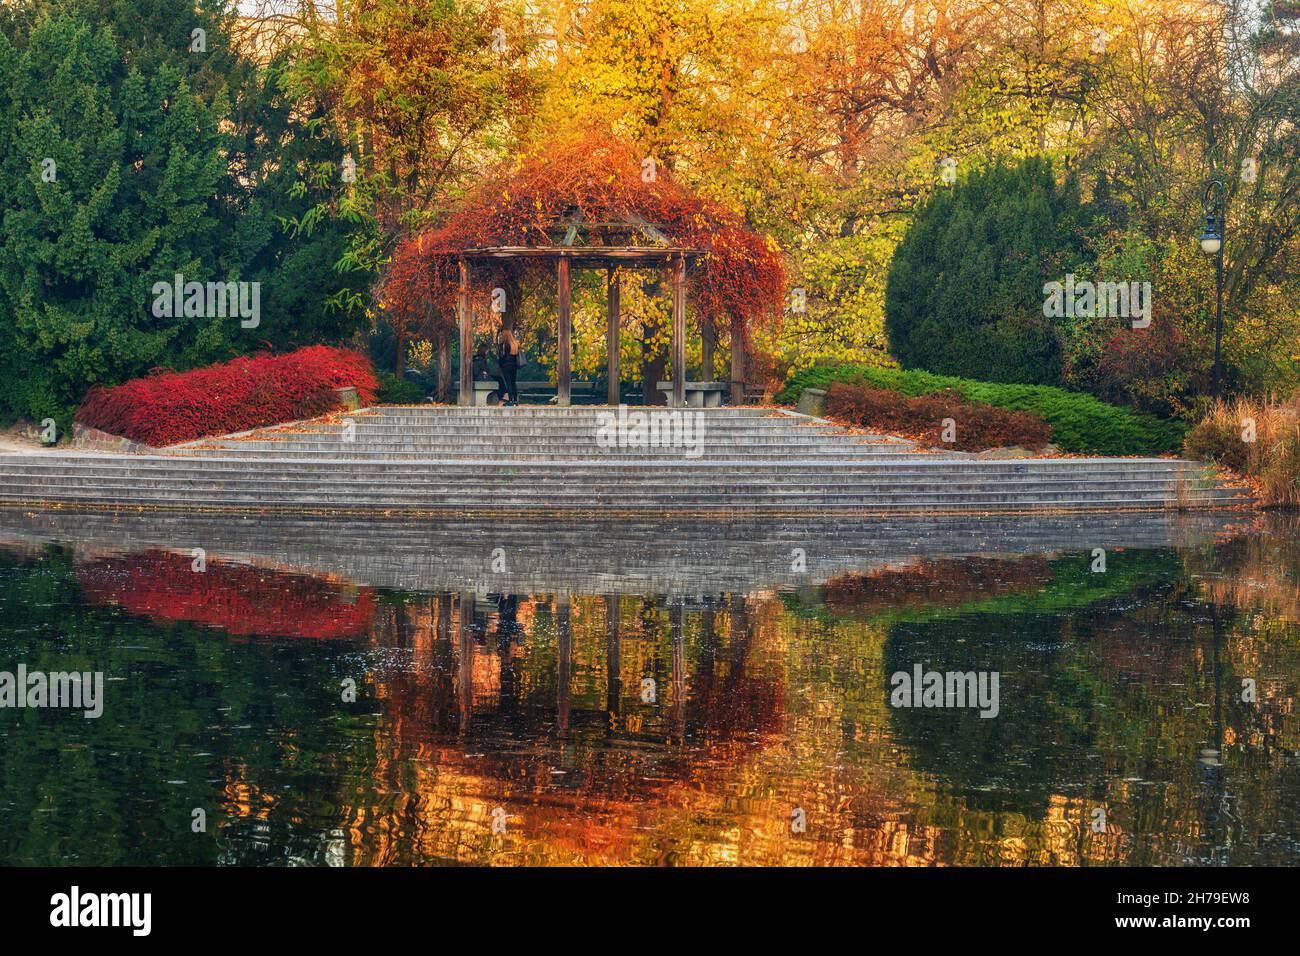 Parc Ujazdowski dans la ville de Varsovie en Pologne.Pergola et escaliers vers le lac dans un paysage d'automne pittoresque. Banque D'Images